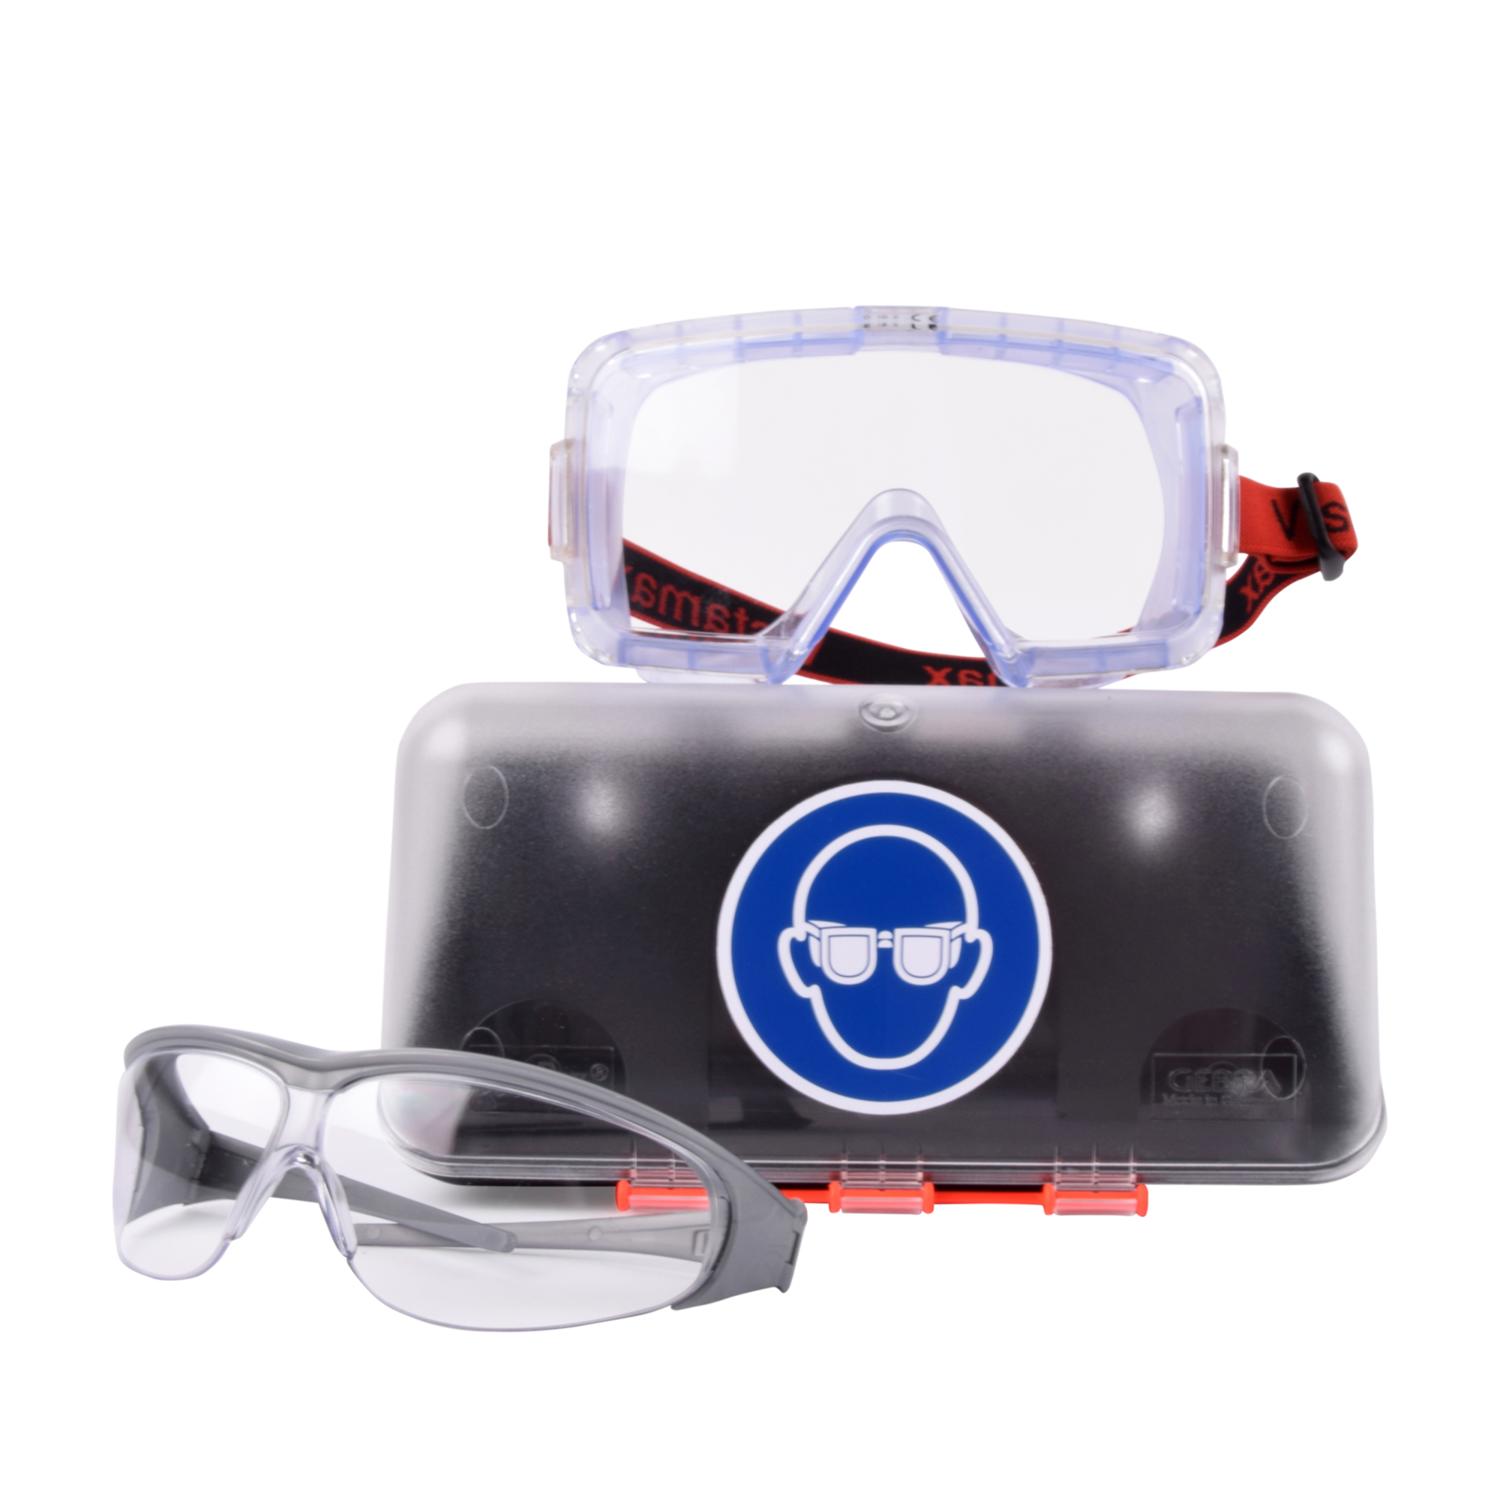 Aufbewahrungsbox für Schutzbrillen, Schutzbrillen